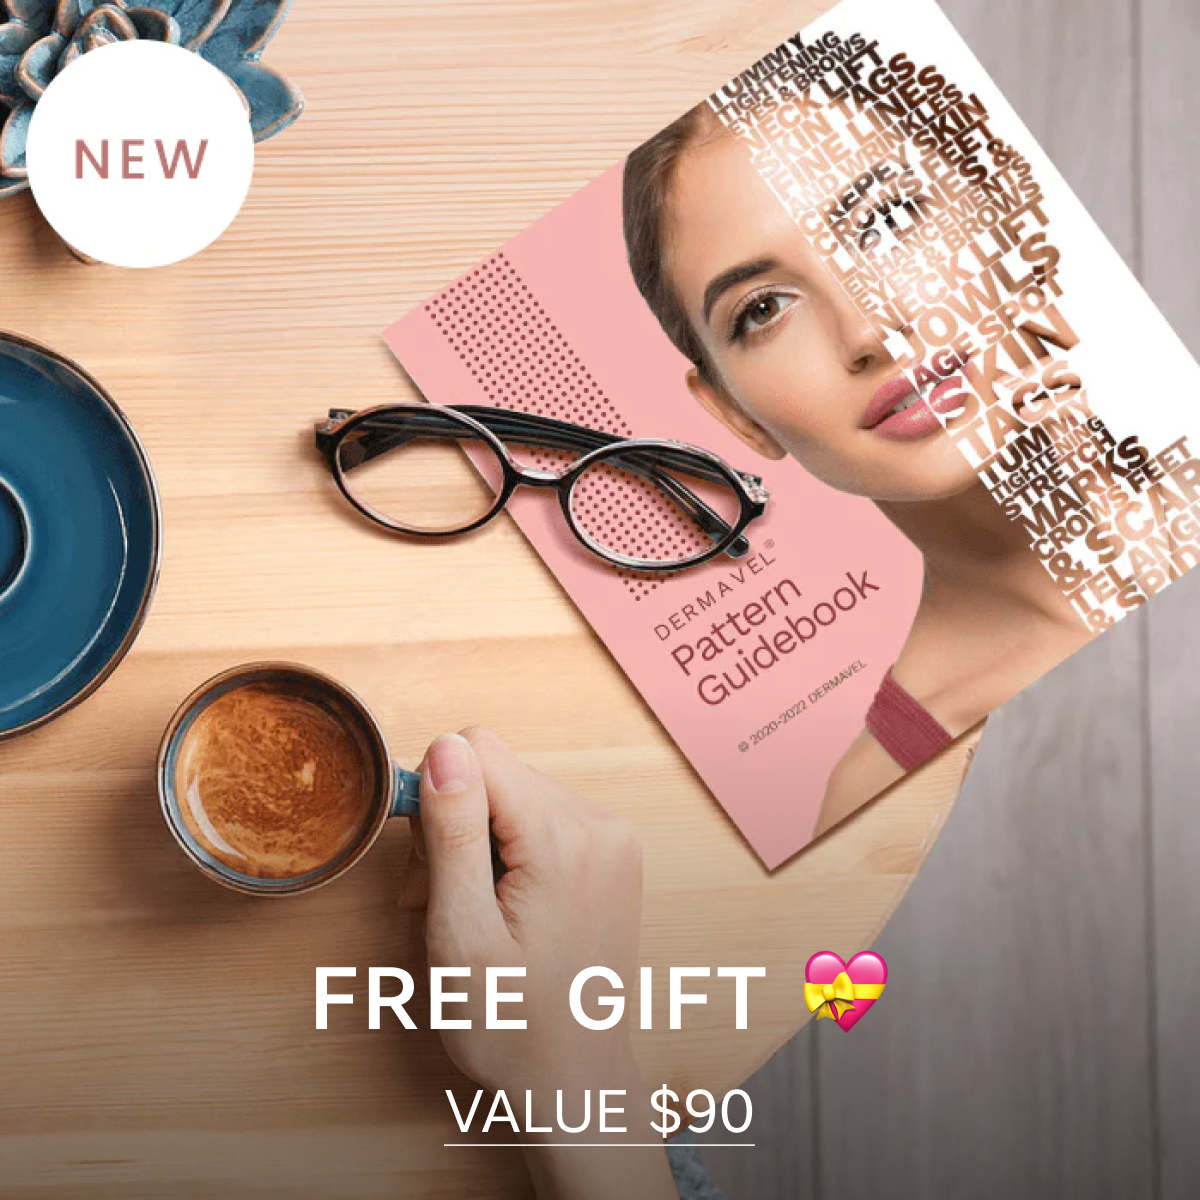 Bundle Deal: Beauty Spa Kit (5x) + Repair Pack (204pcs) + Free Guidebook